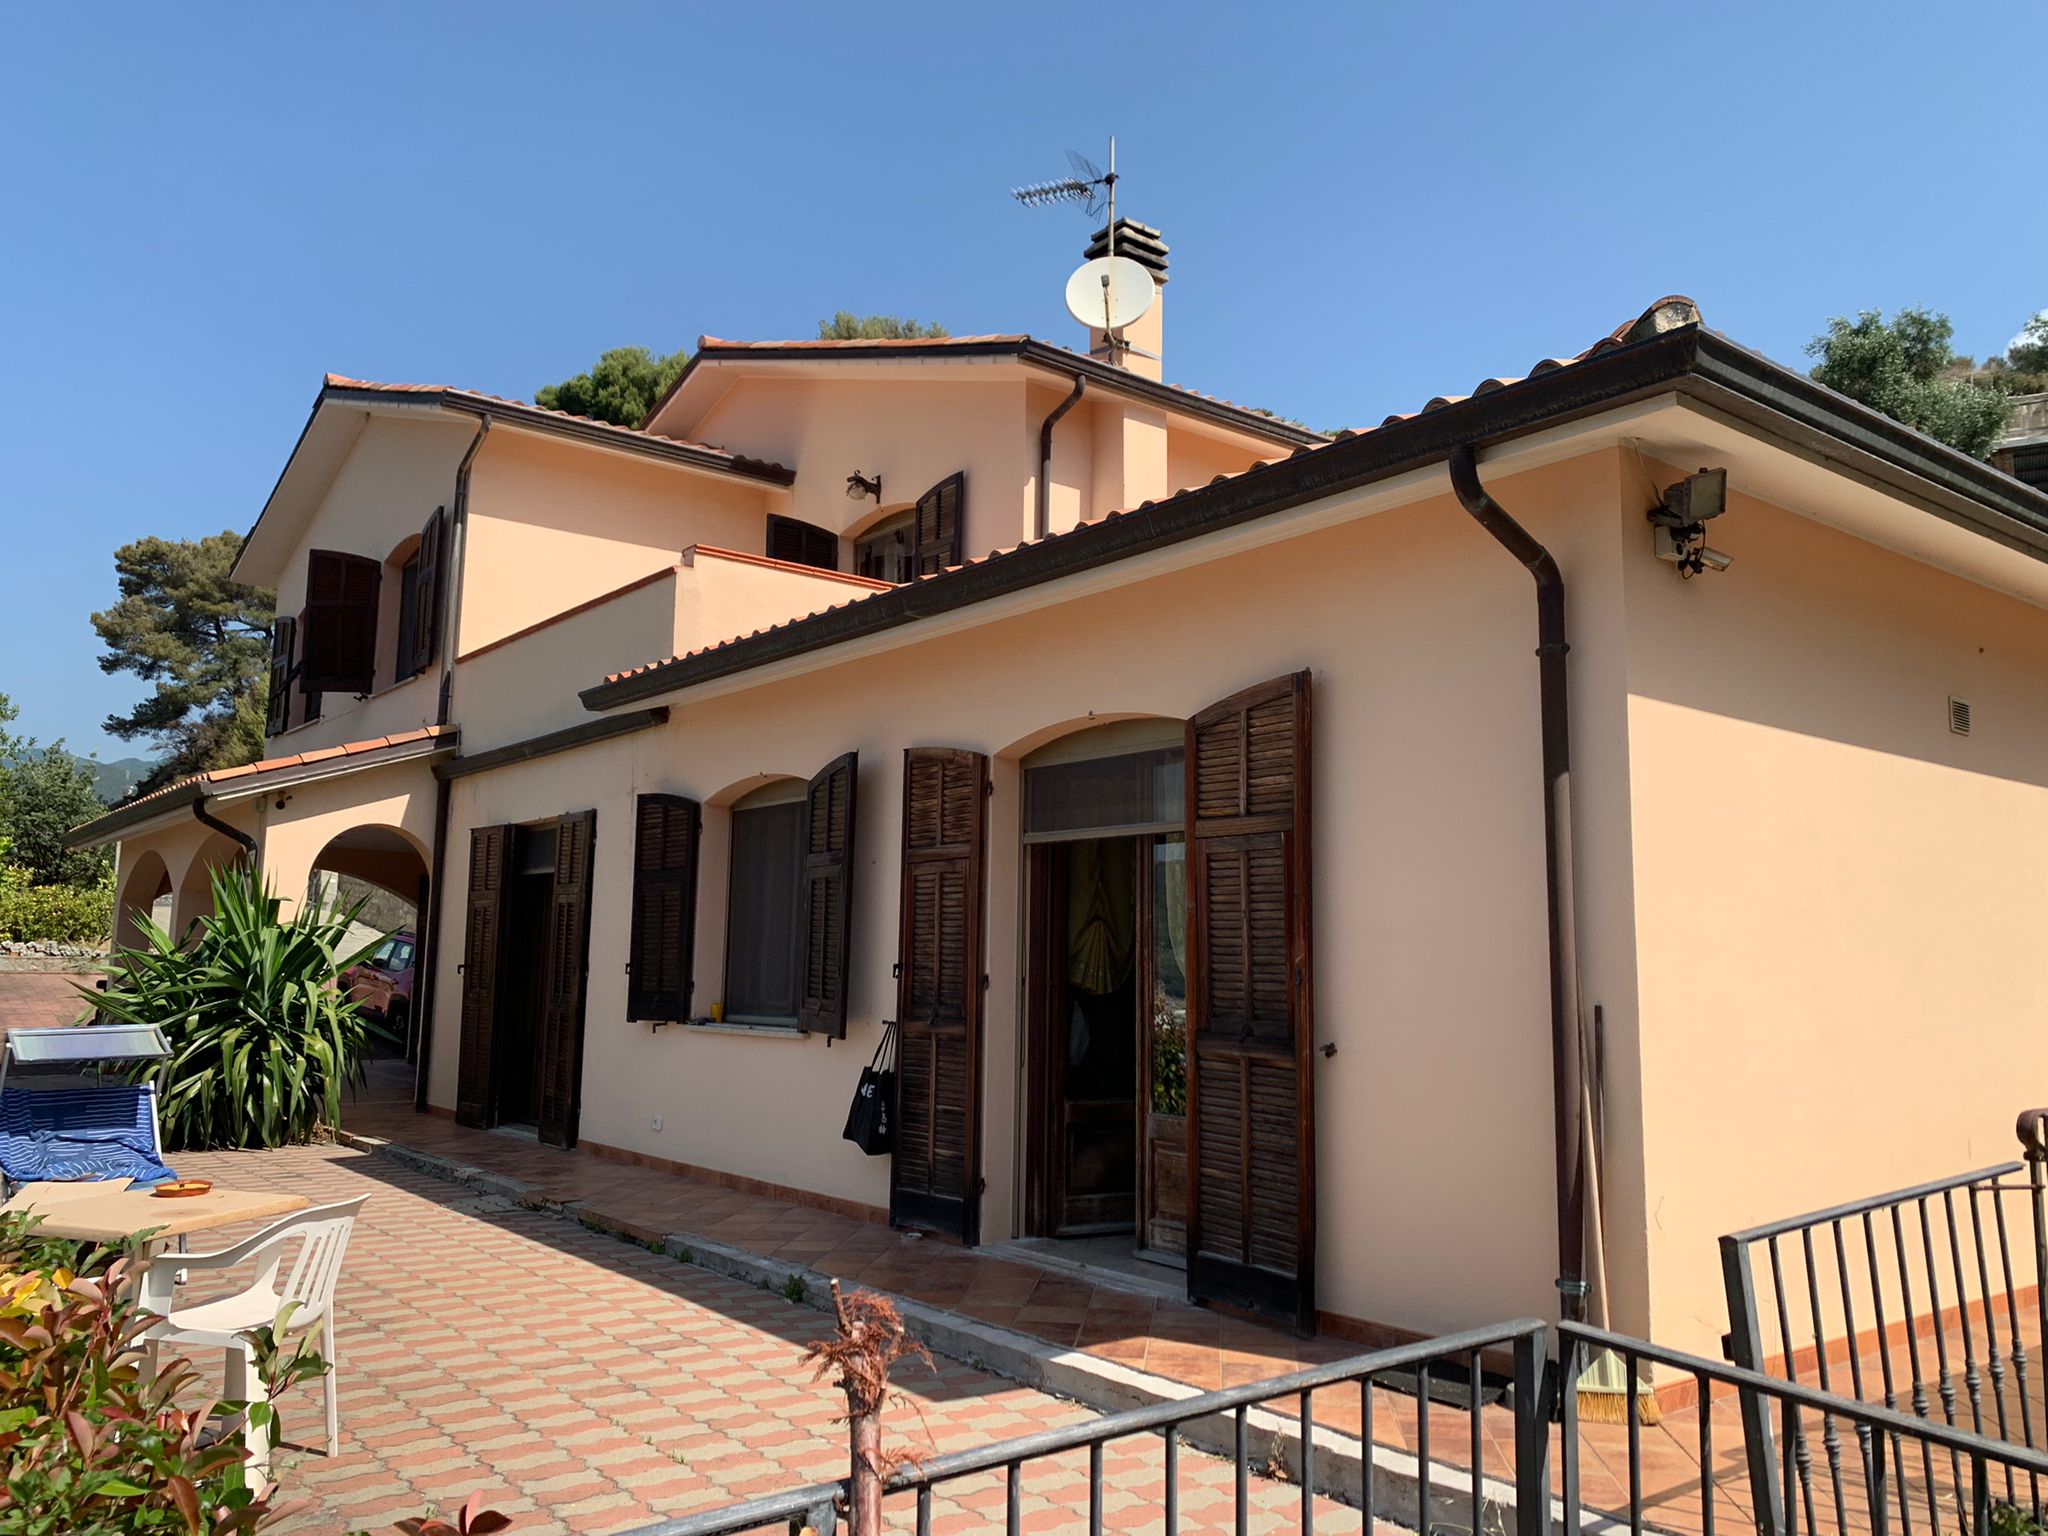 Vendita villa in zona tranquilla Taggia Liguria